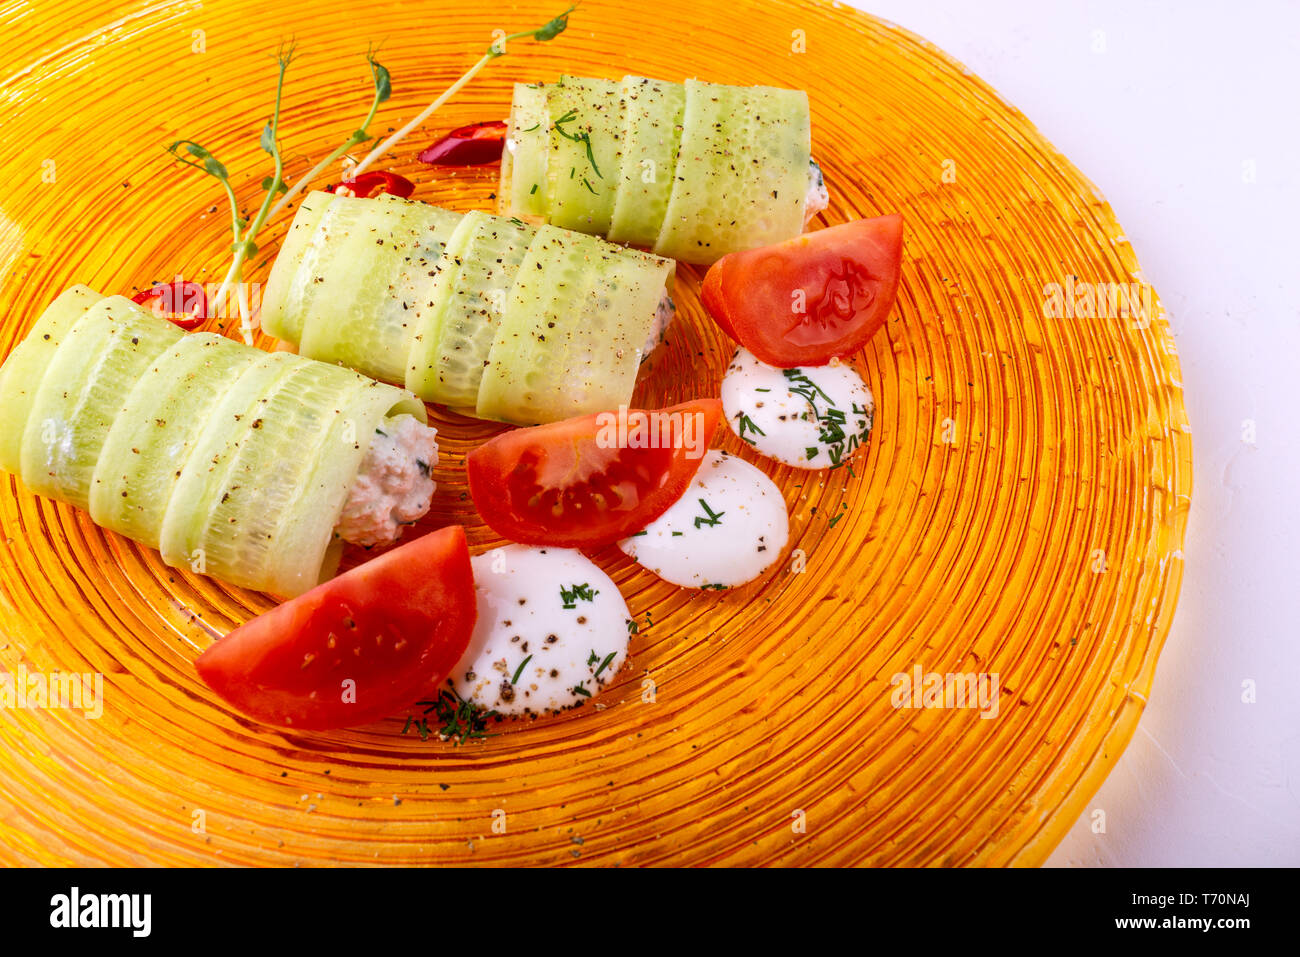 Il cibo italiano su sfondo bianco. Mozzarella, di foglie di basilico fresco, pomodoro, olio d'oliva, panini al formaggio e verdi sulla piastra. Macro Foto Stock